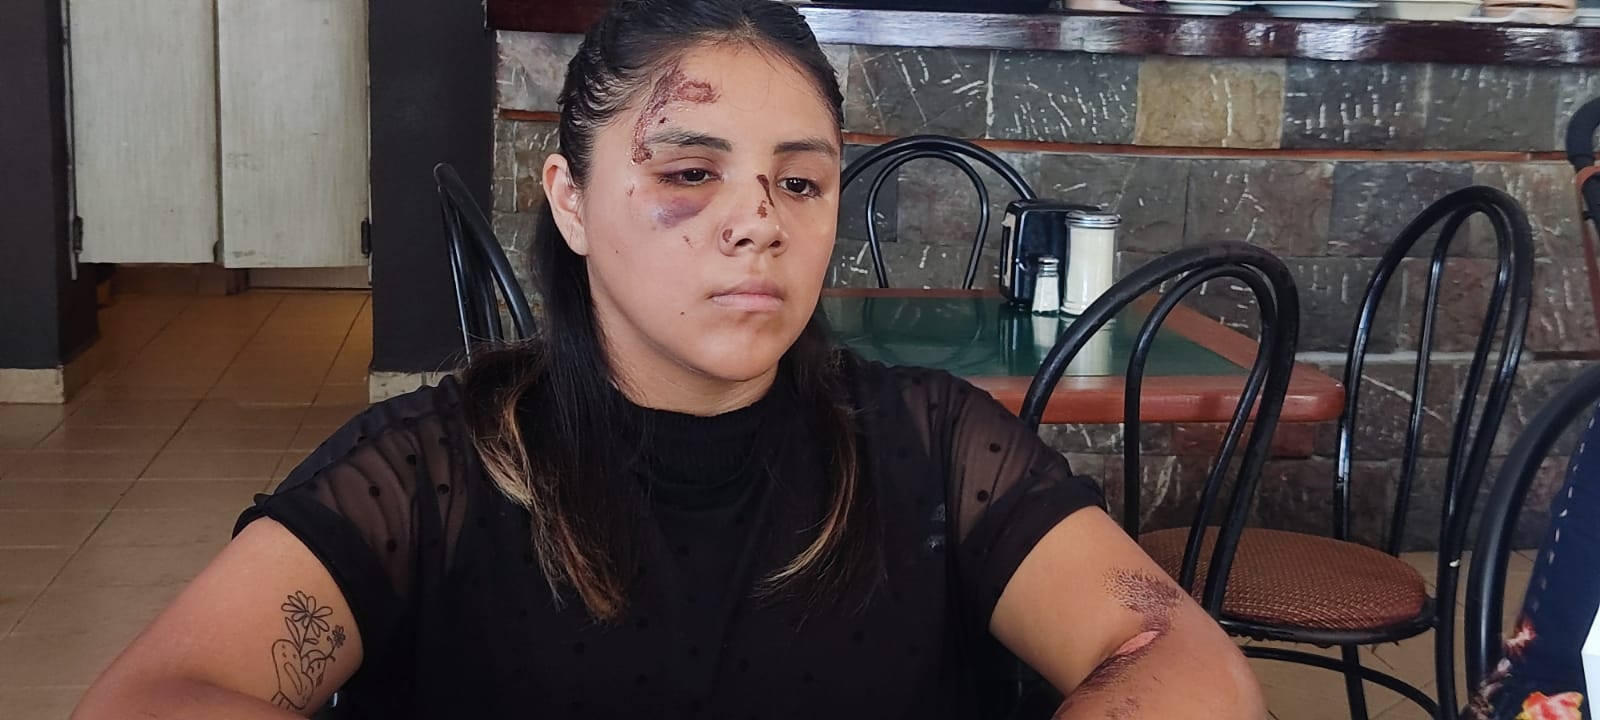 Buscan a conductor responsable de atropellar y dejar herida a una joven en Playa del Carmen